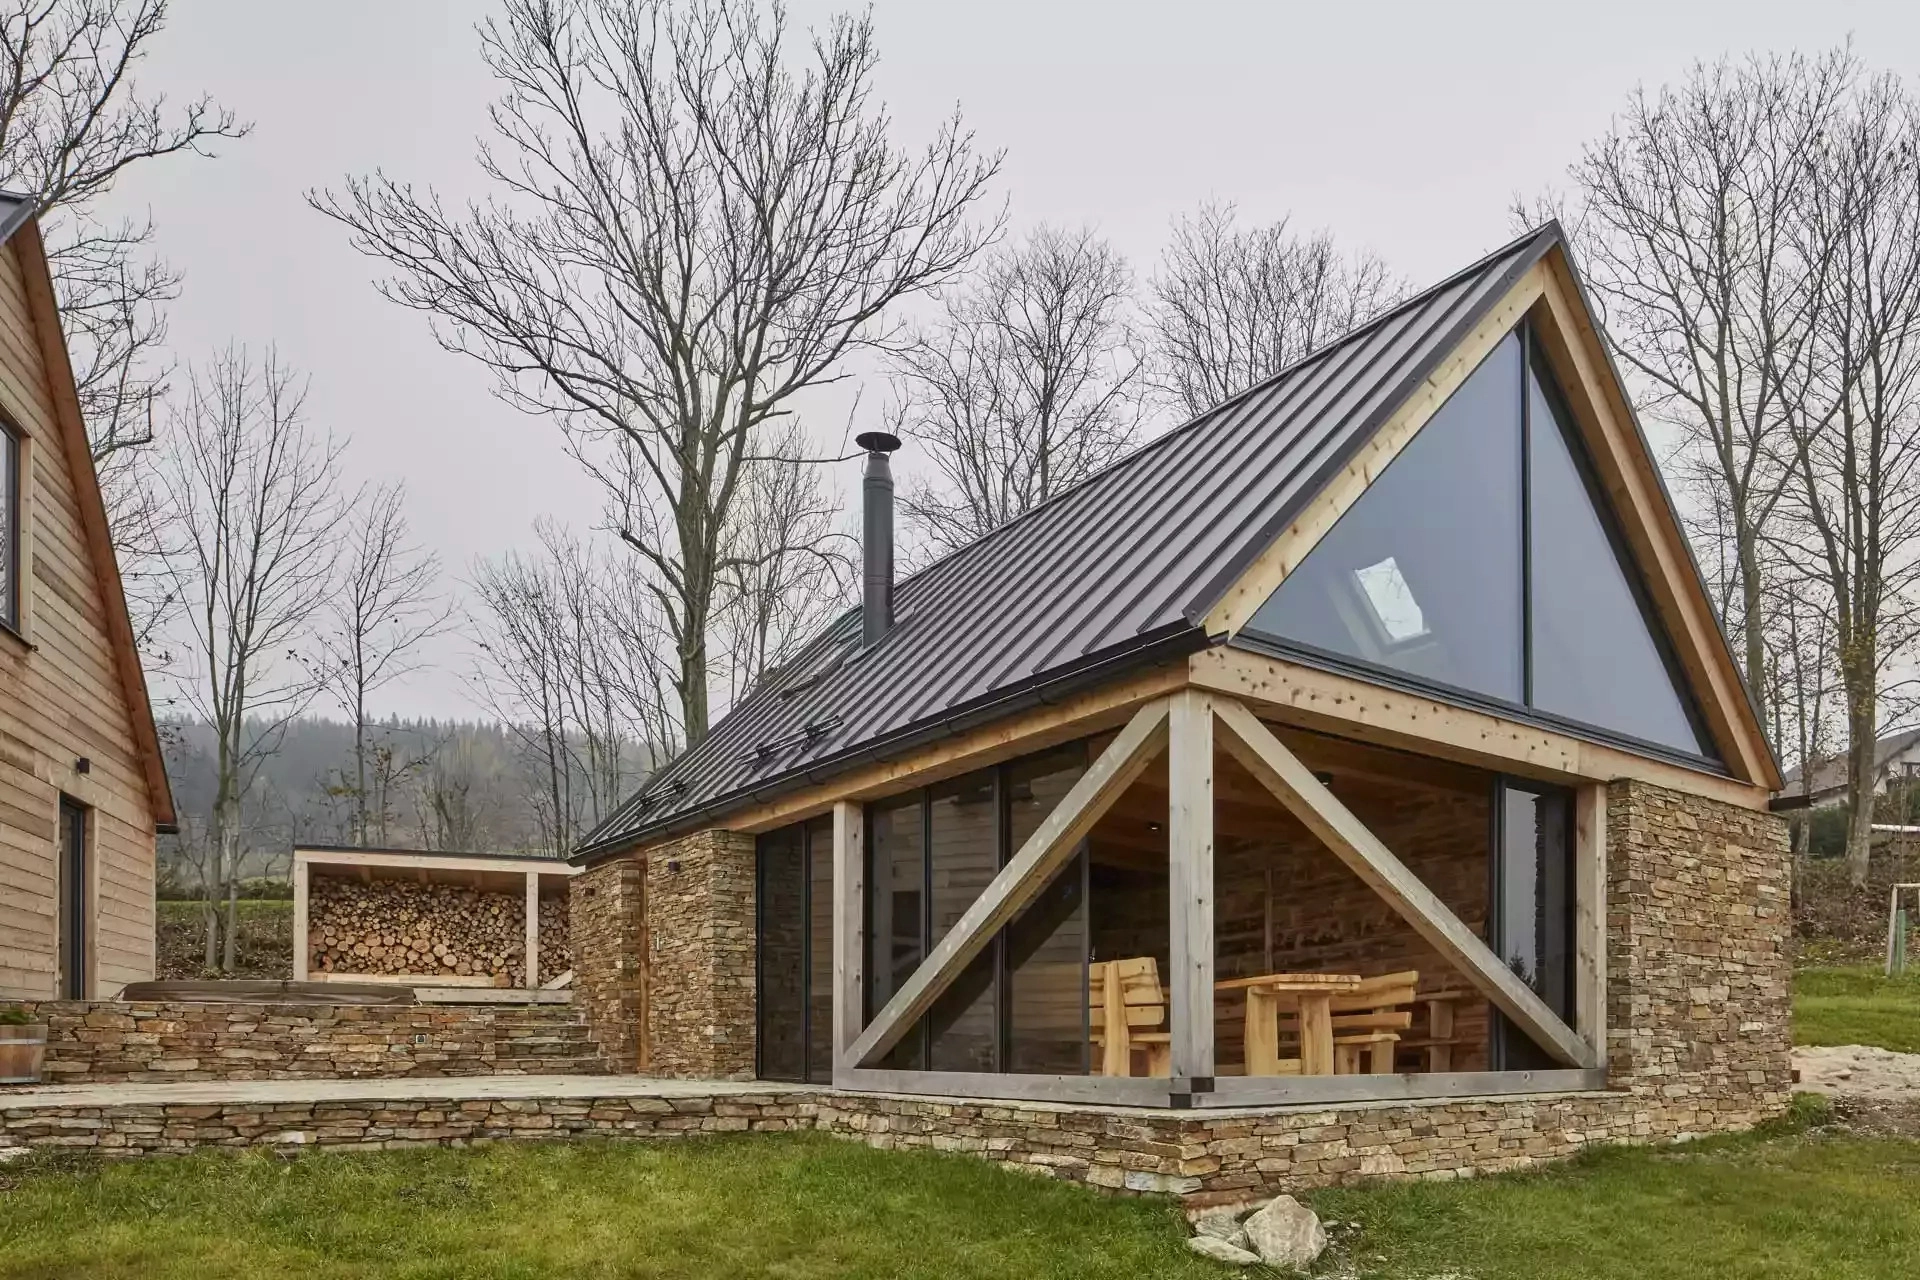 Lite drewno, kamień i szkło stworzyły idealny dom w górach